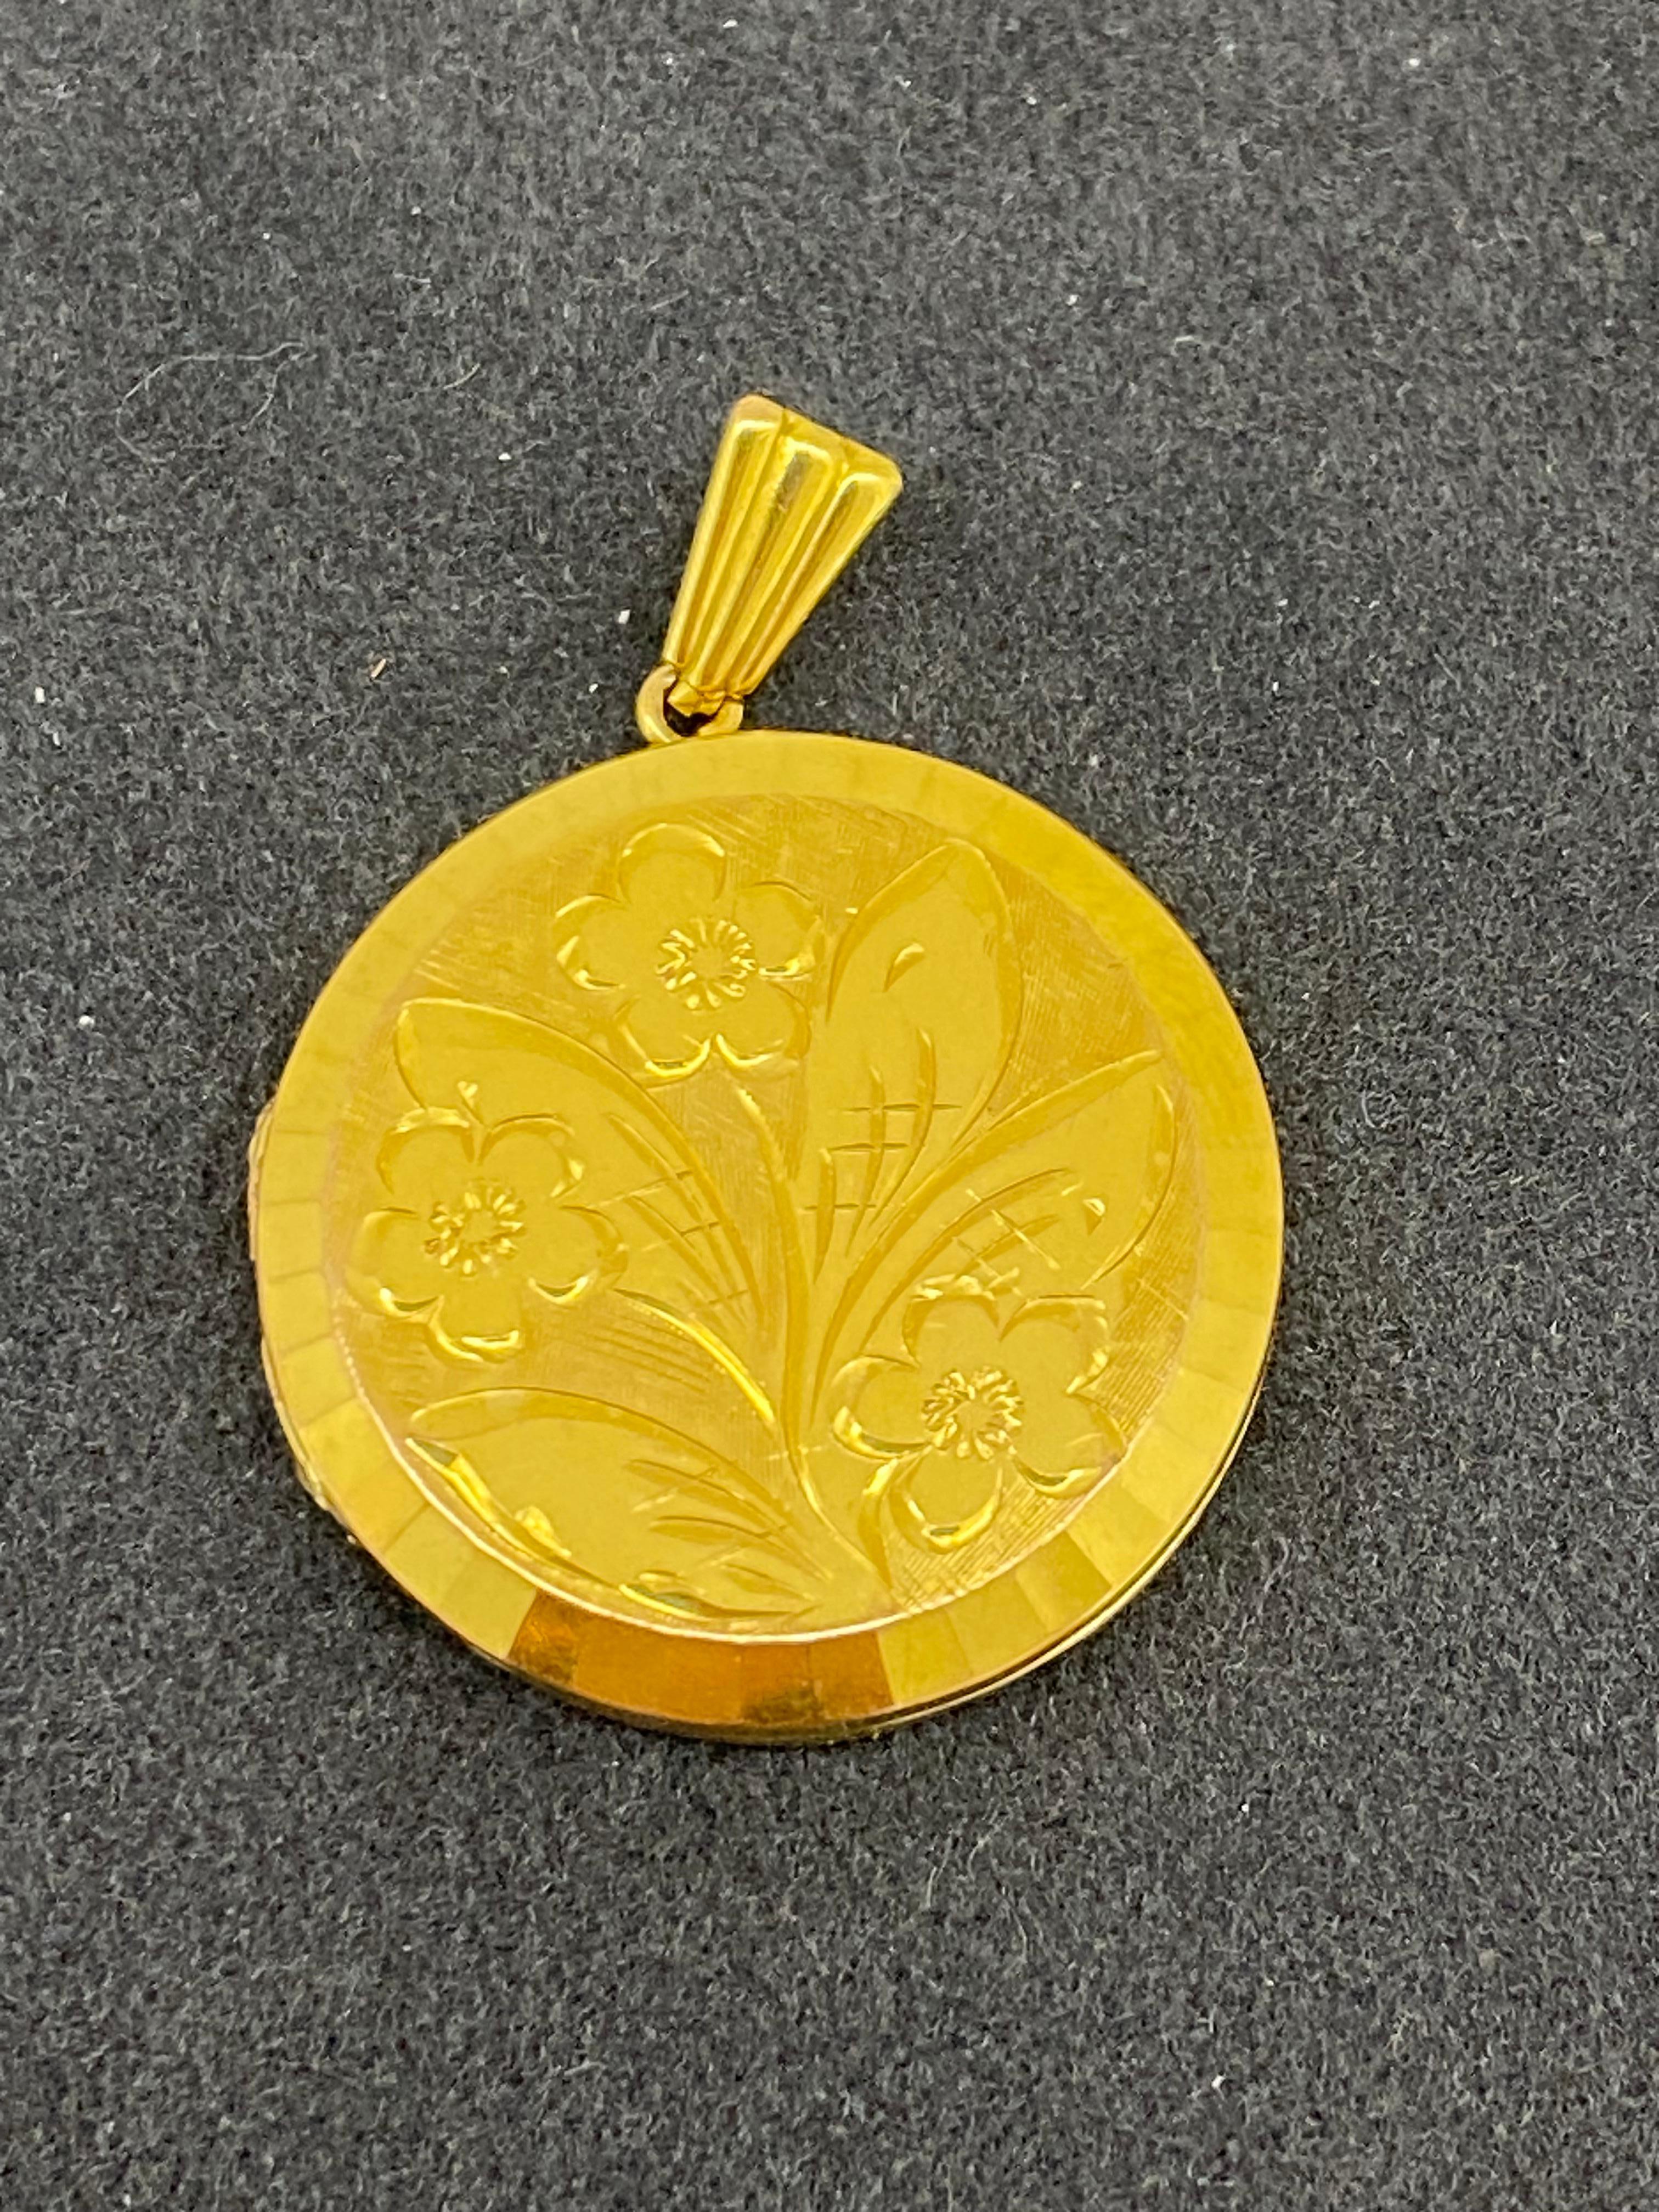 Médaillon rond anglais vintage des années 1970 en or jaune 9 carats gravé d'un motif floral